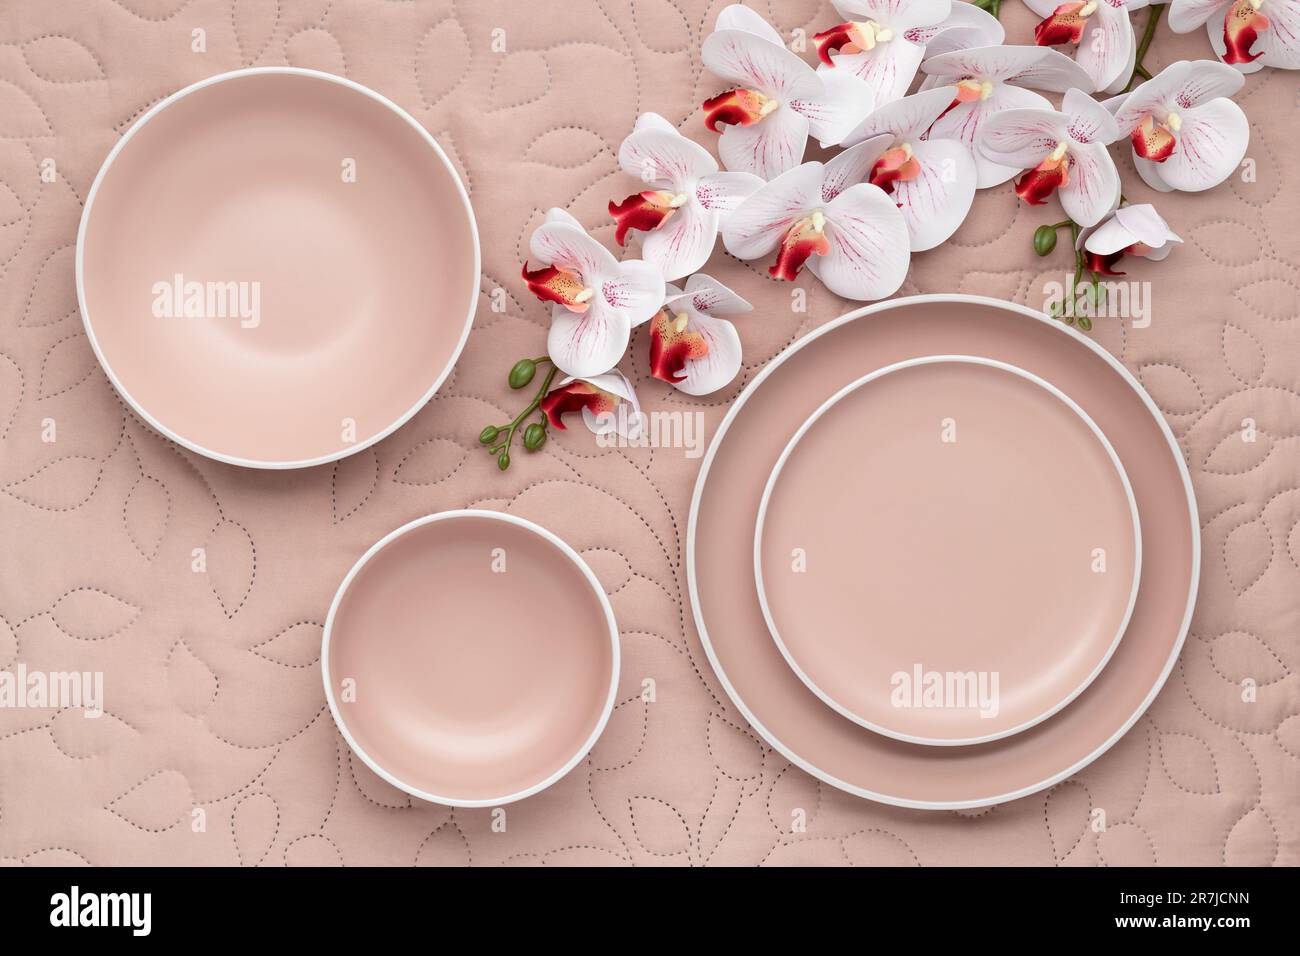 Ein Set cremefarbener Platten in verschiedenen Größen und Blumenstrauß auf dem Tisch, Draufsicht. Ein leeres Geschirr auf einer hellen beigen Tischdecke. Modernes t Stockfoto